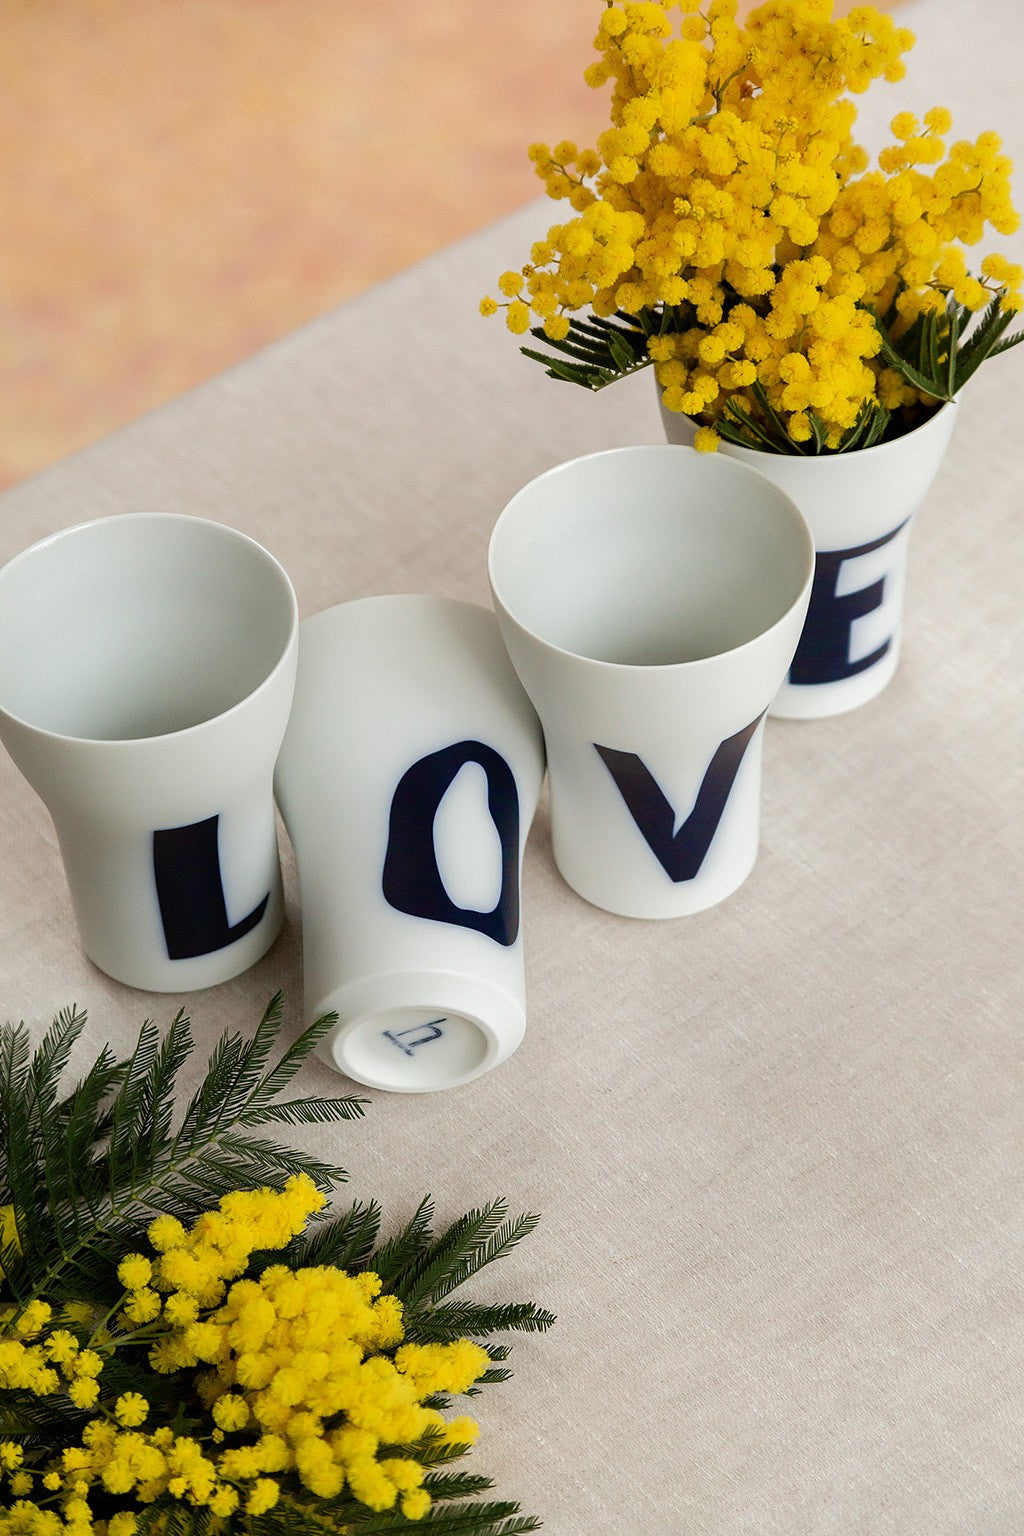 Vier weiße zylindrische Vasen mit Buchstaben darauf, die „Liebe“ bedeuten, wobei eine Vase umgeworfen wurde und in zwei der aufrecht stehenden Vasen gelbe Blumen arrangiert waren.